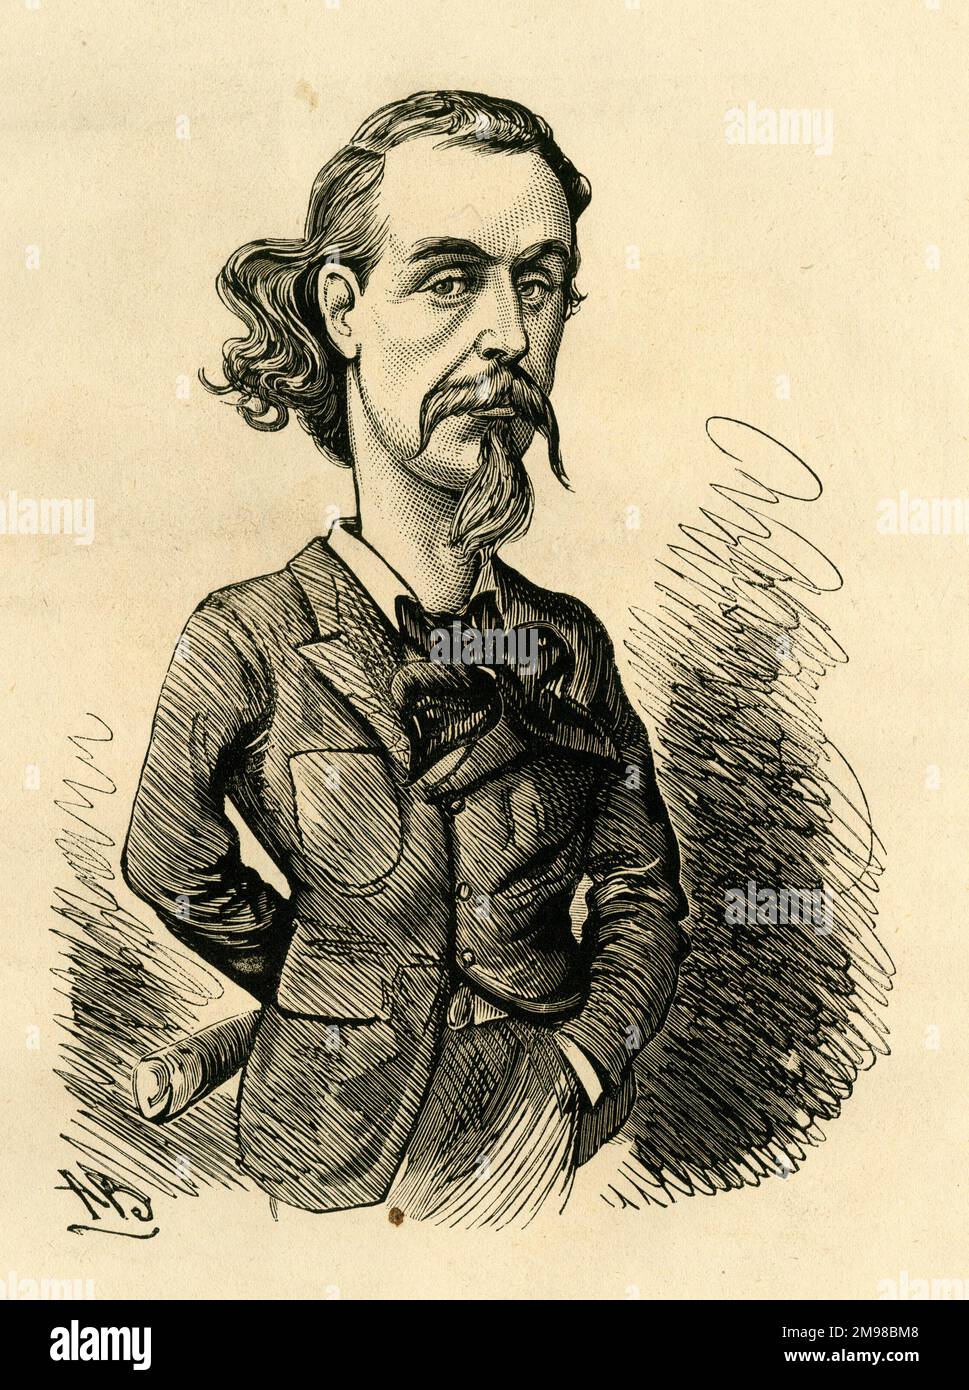 Caricature, Signor Foli (Allan James Foley, 1837-1899), chanteur irlandais d'opéra-basse -- il a étudié Bradshaw (probablement une référence à ses voyages et visites). Banque D'Images